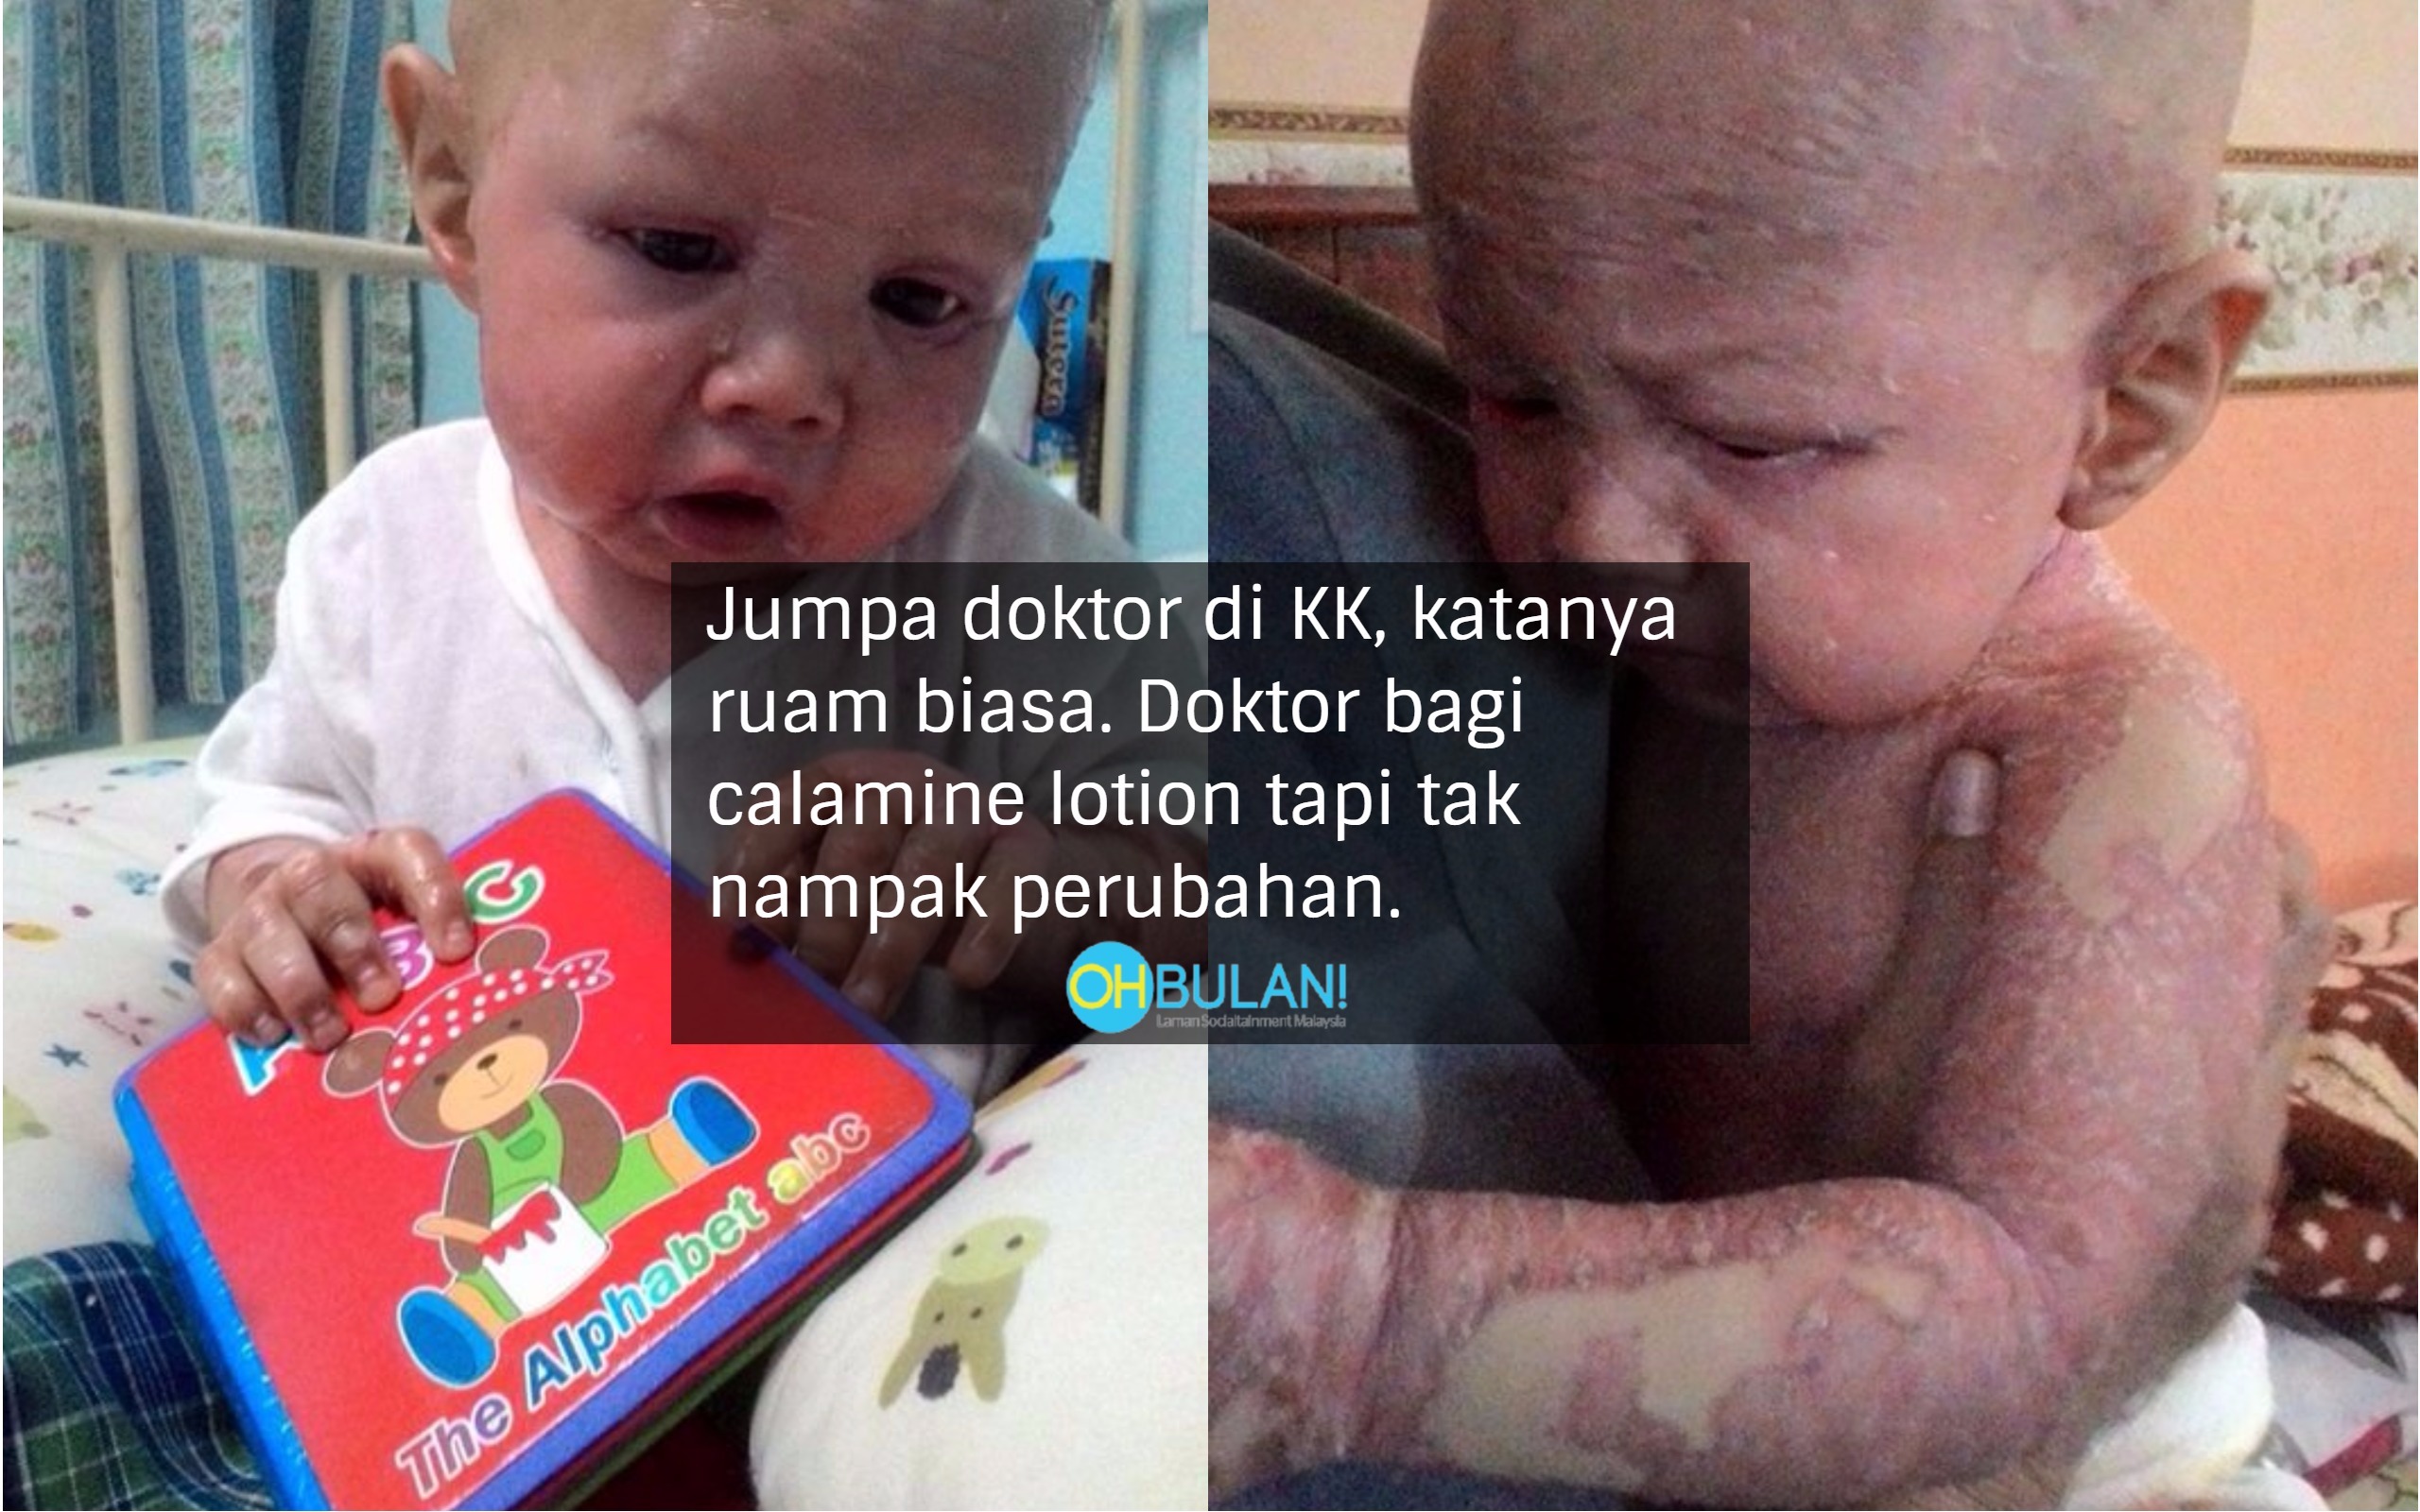 Dinasihat Jangan Guna Ubat Hospital, Akhirnya Kulit Anak Makin Teruk..